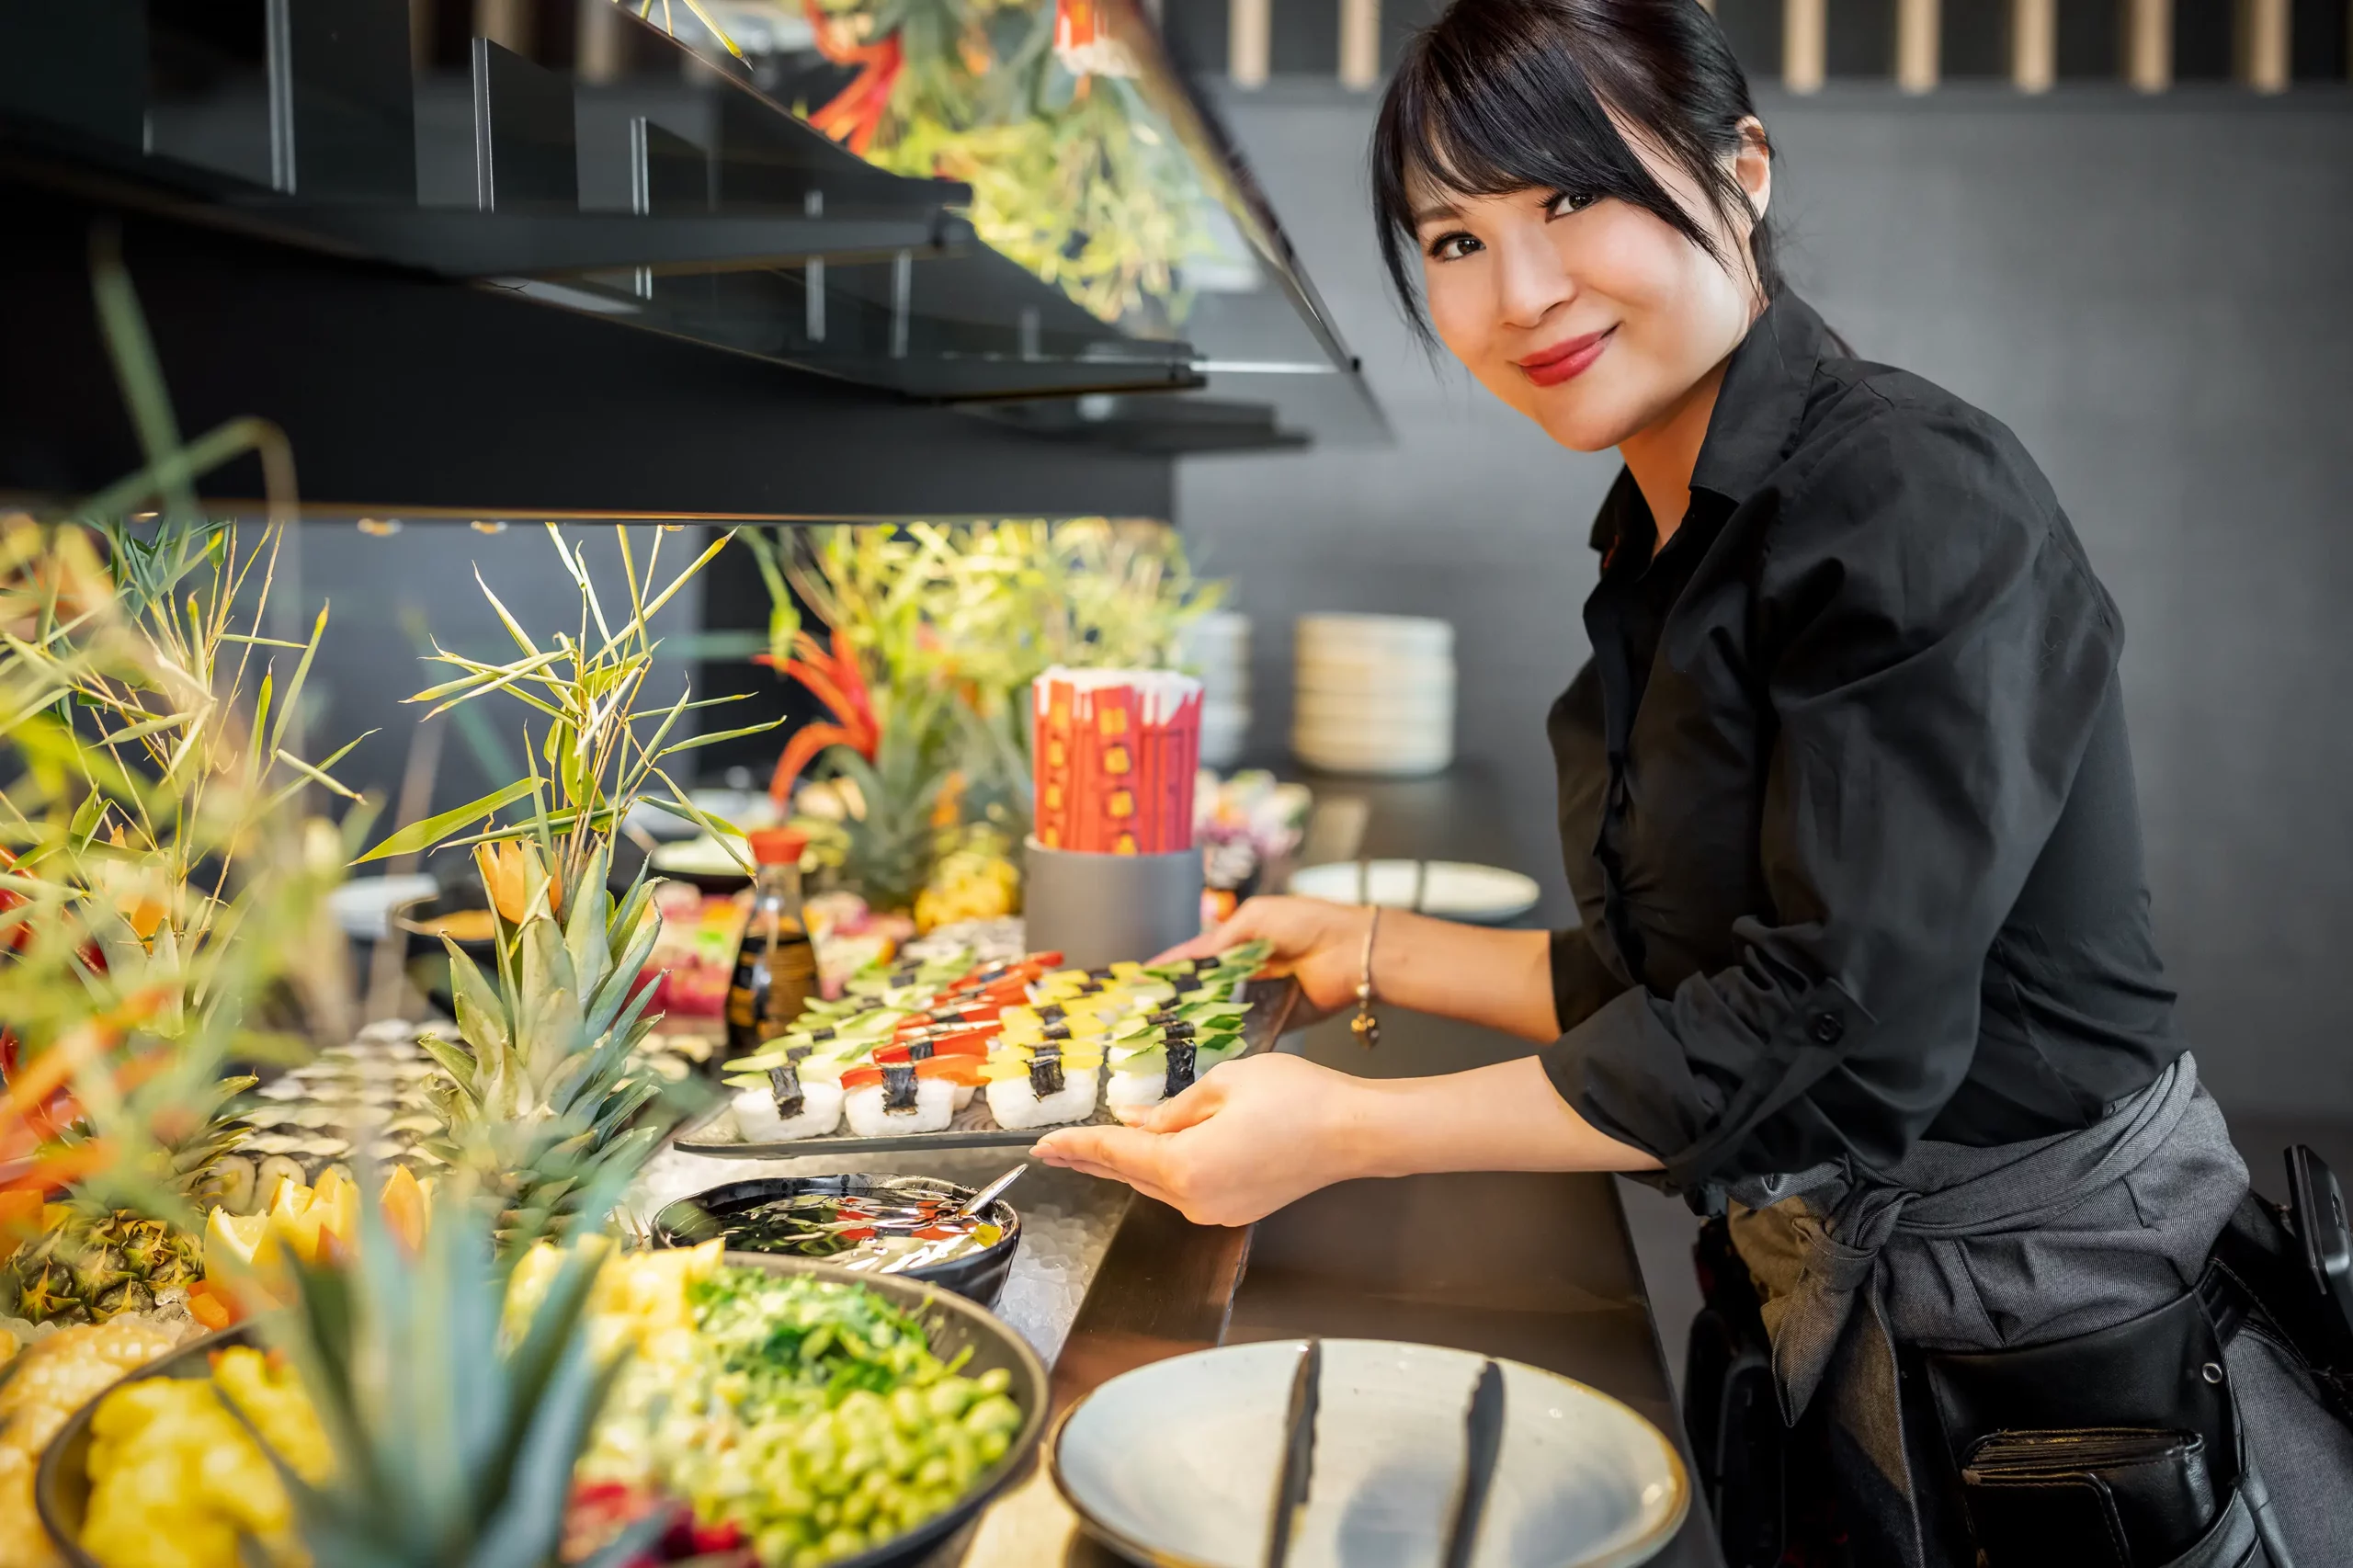 Eine Servicekraft am bunt gemischten Buffet mit veganem Sushi, Bowls und frischen Zutaten